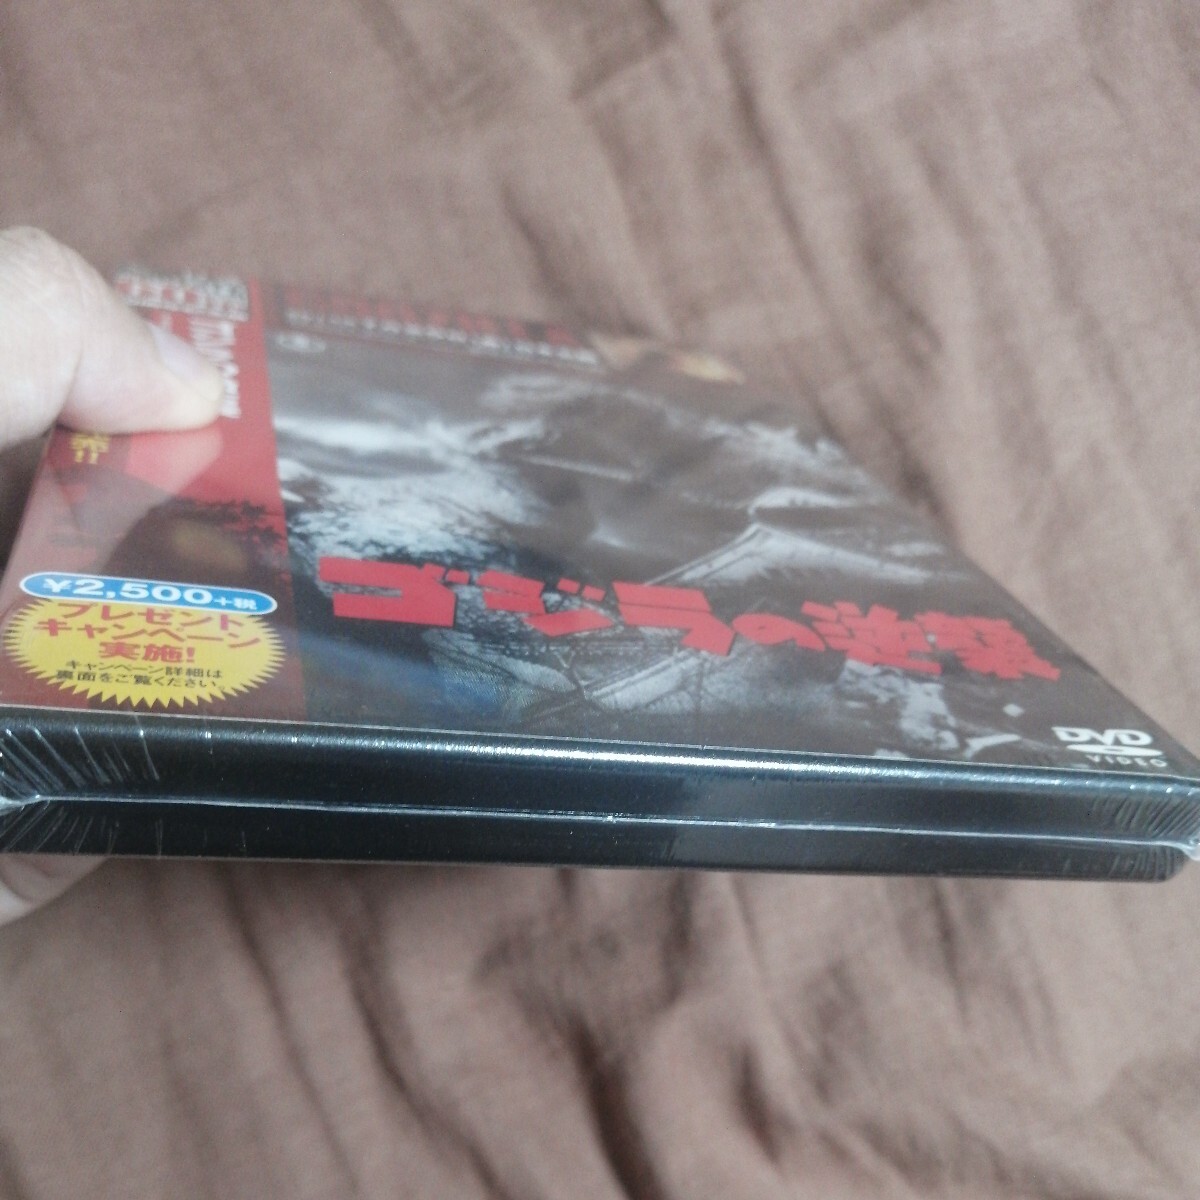 [ новый товар ][ нераспечатанный ]1955 год Godzilla. обратный .DVD 60 anniversary commemoration версия DVD восток . кошка pohs retro налог нет 